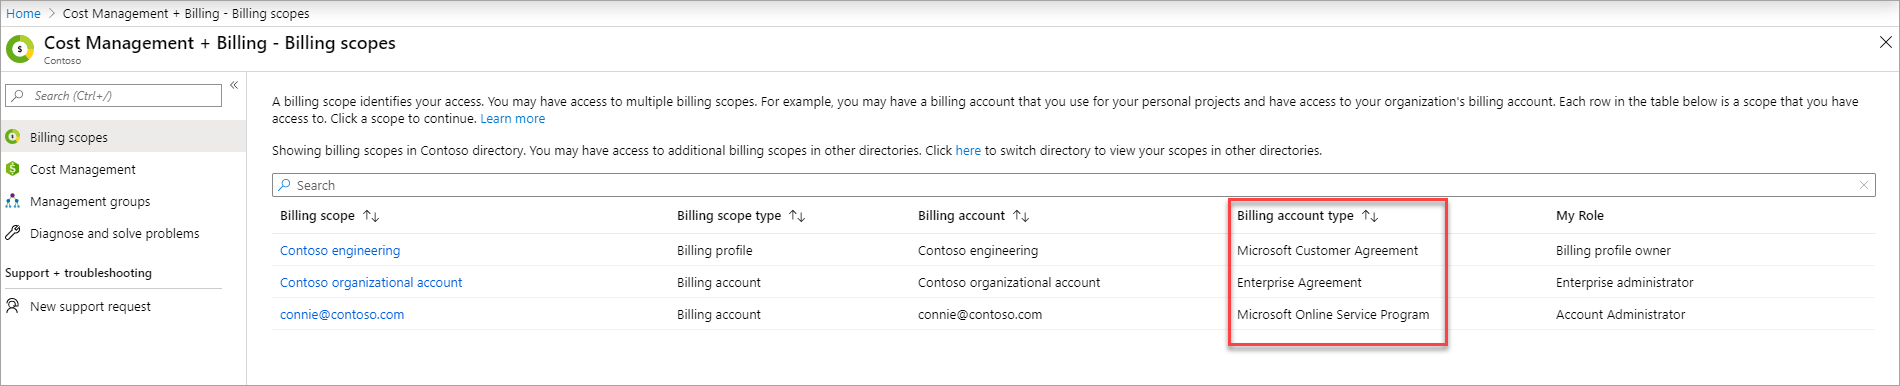 Captura de ecrã que mostra o contrato de cliente Microsoft na página com a lista de contas de faturação